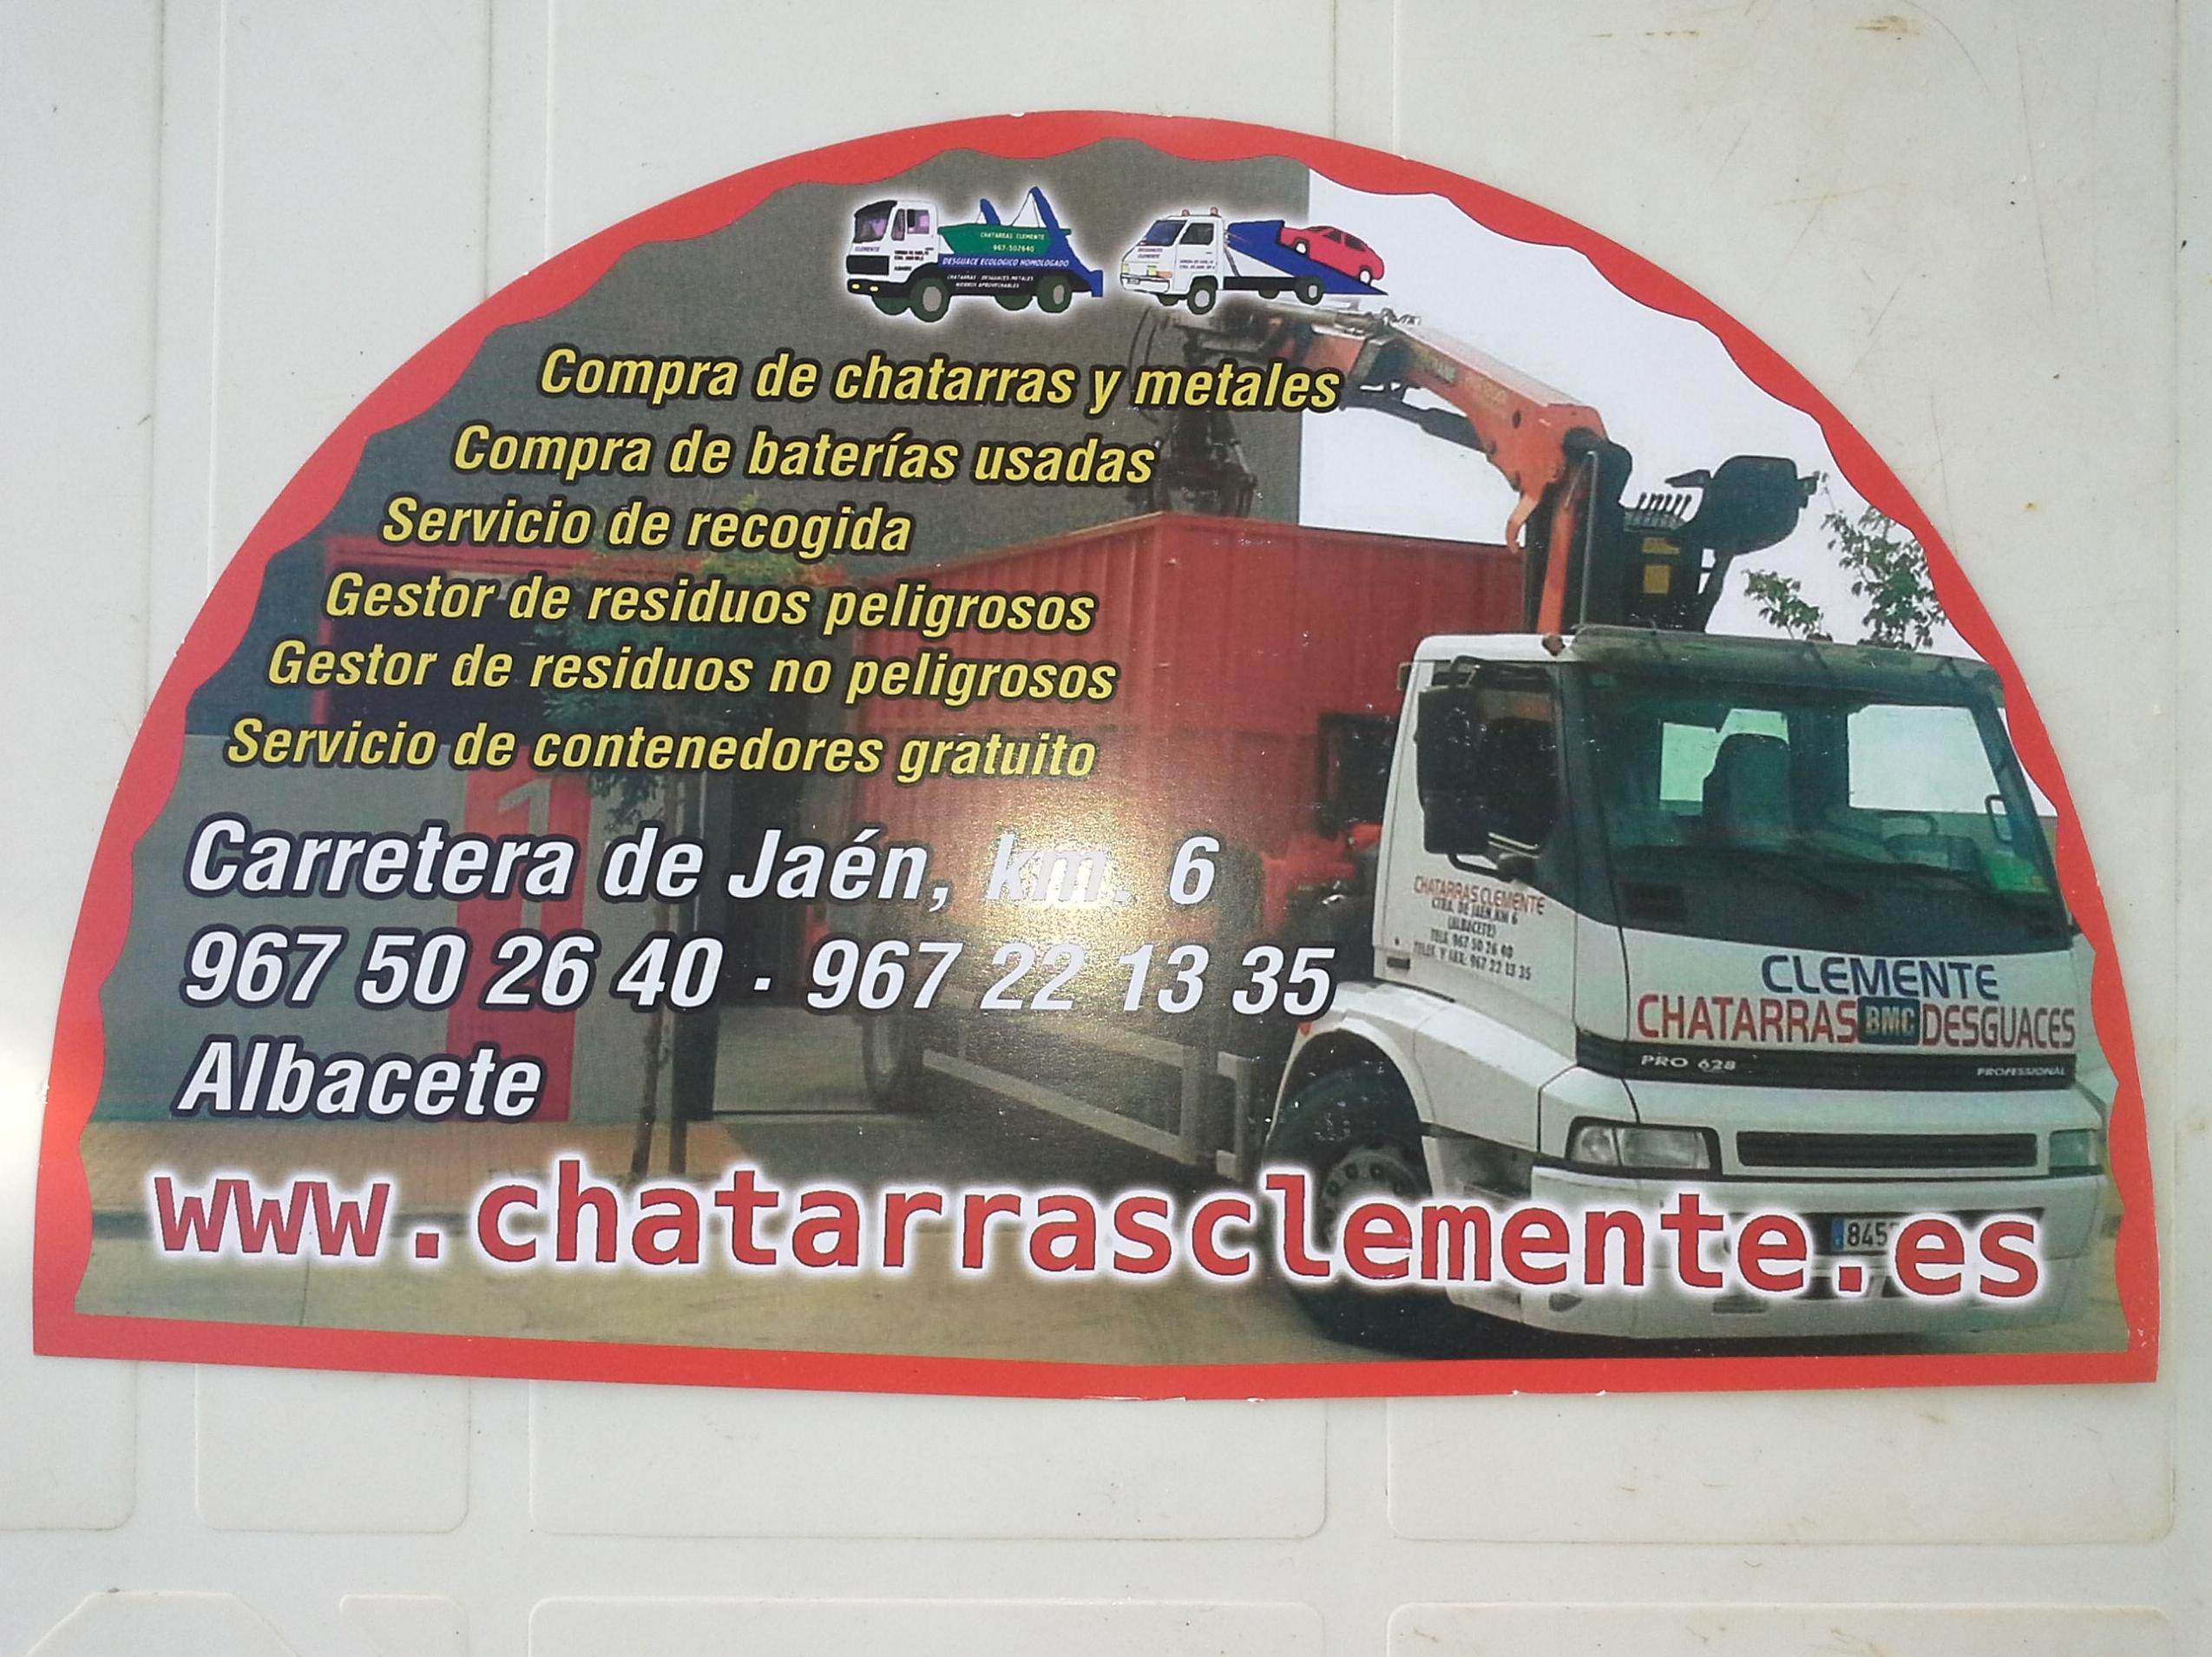 Abanicos repartidos por Chatarras Clemente en la feria de Albacete 2014